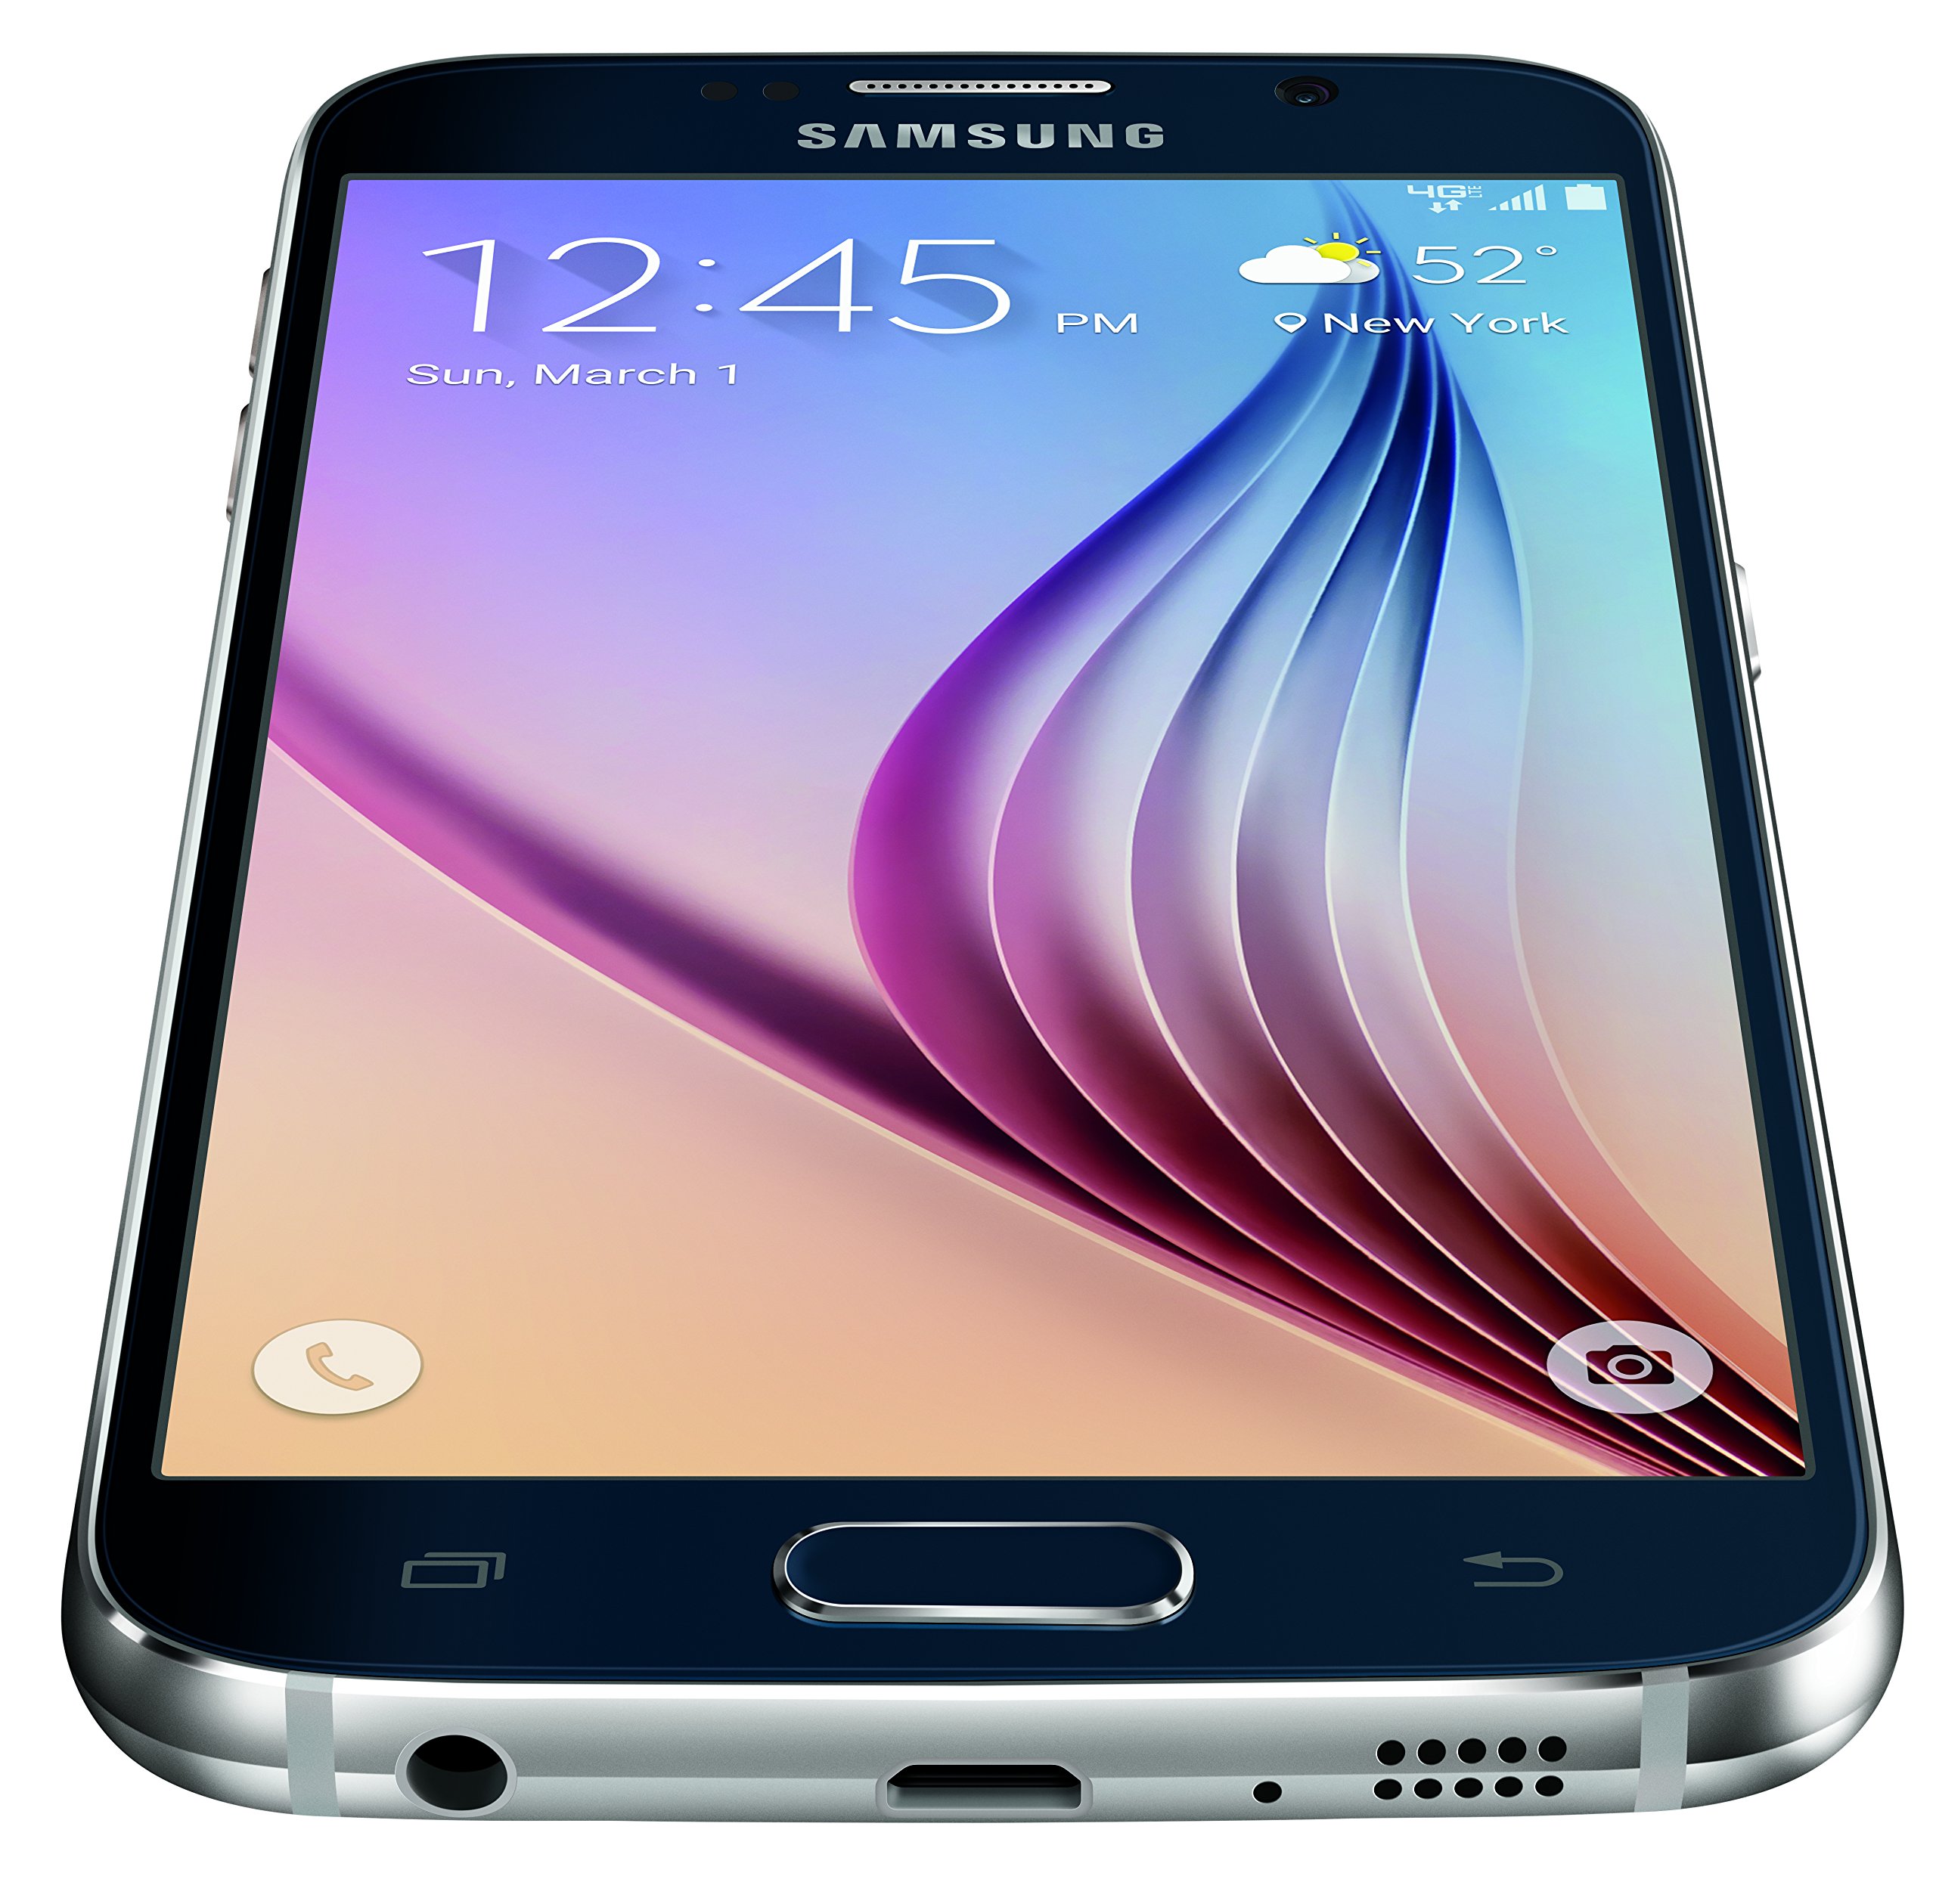 Samsung Galaxy S6, Black Sapphire 32GB (AT&T)